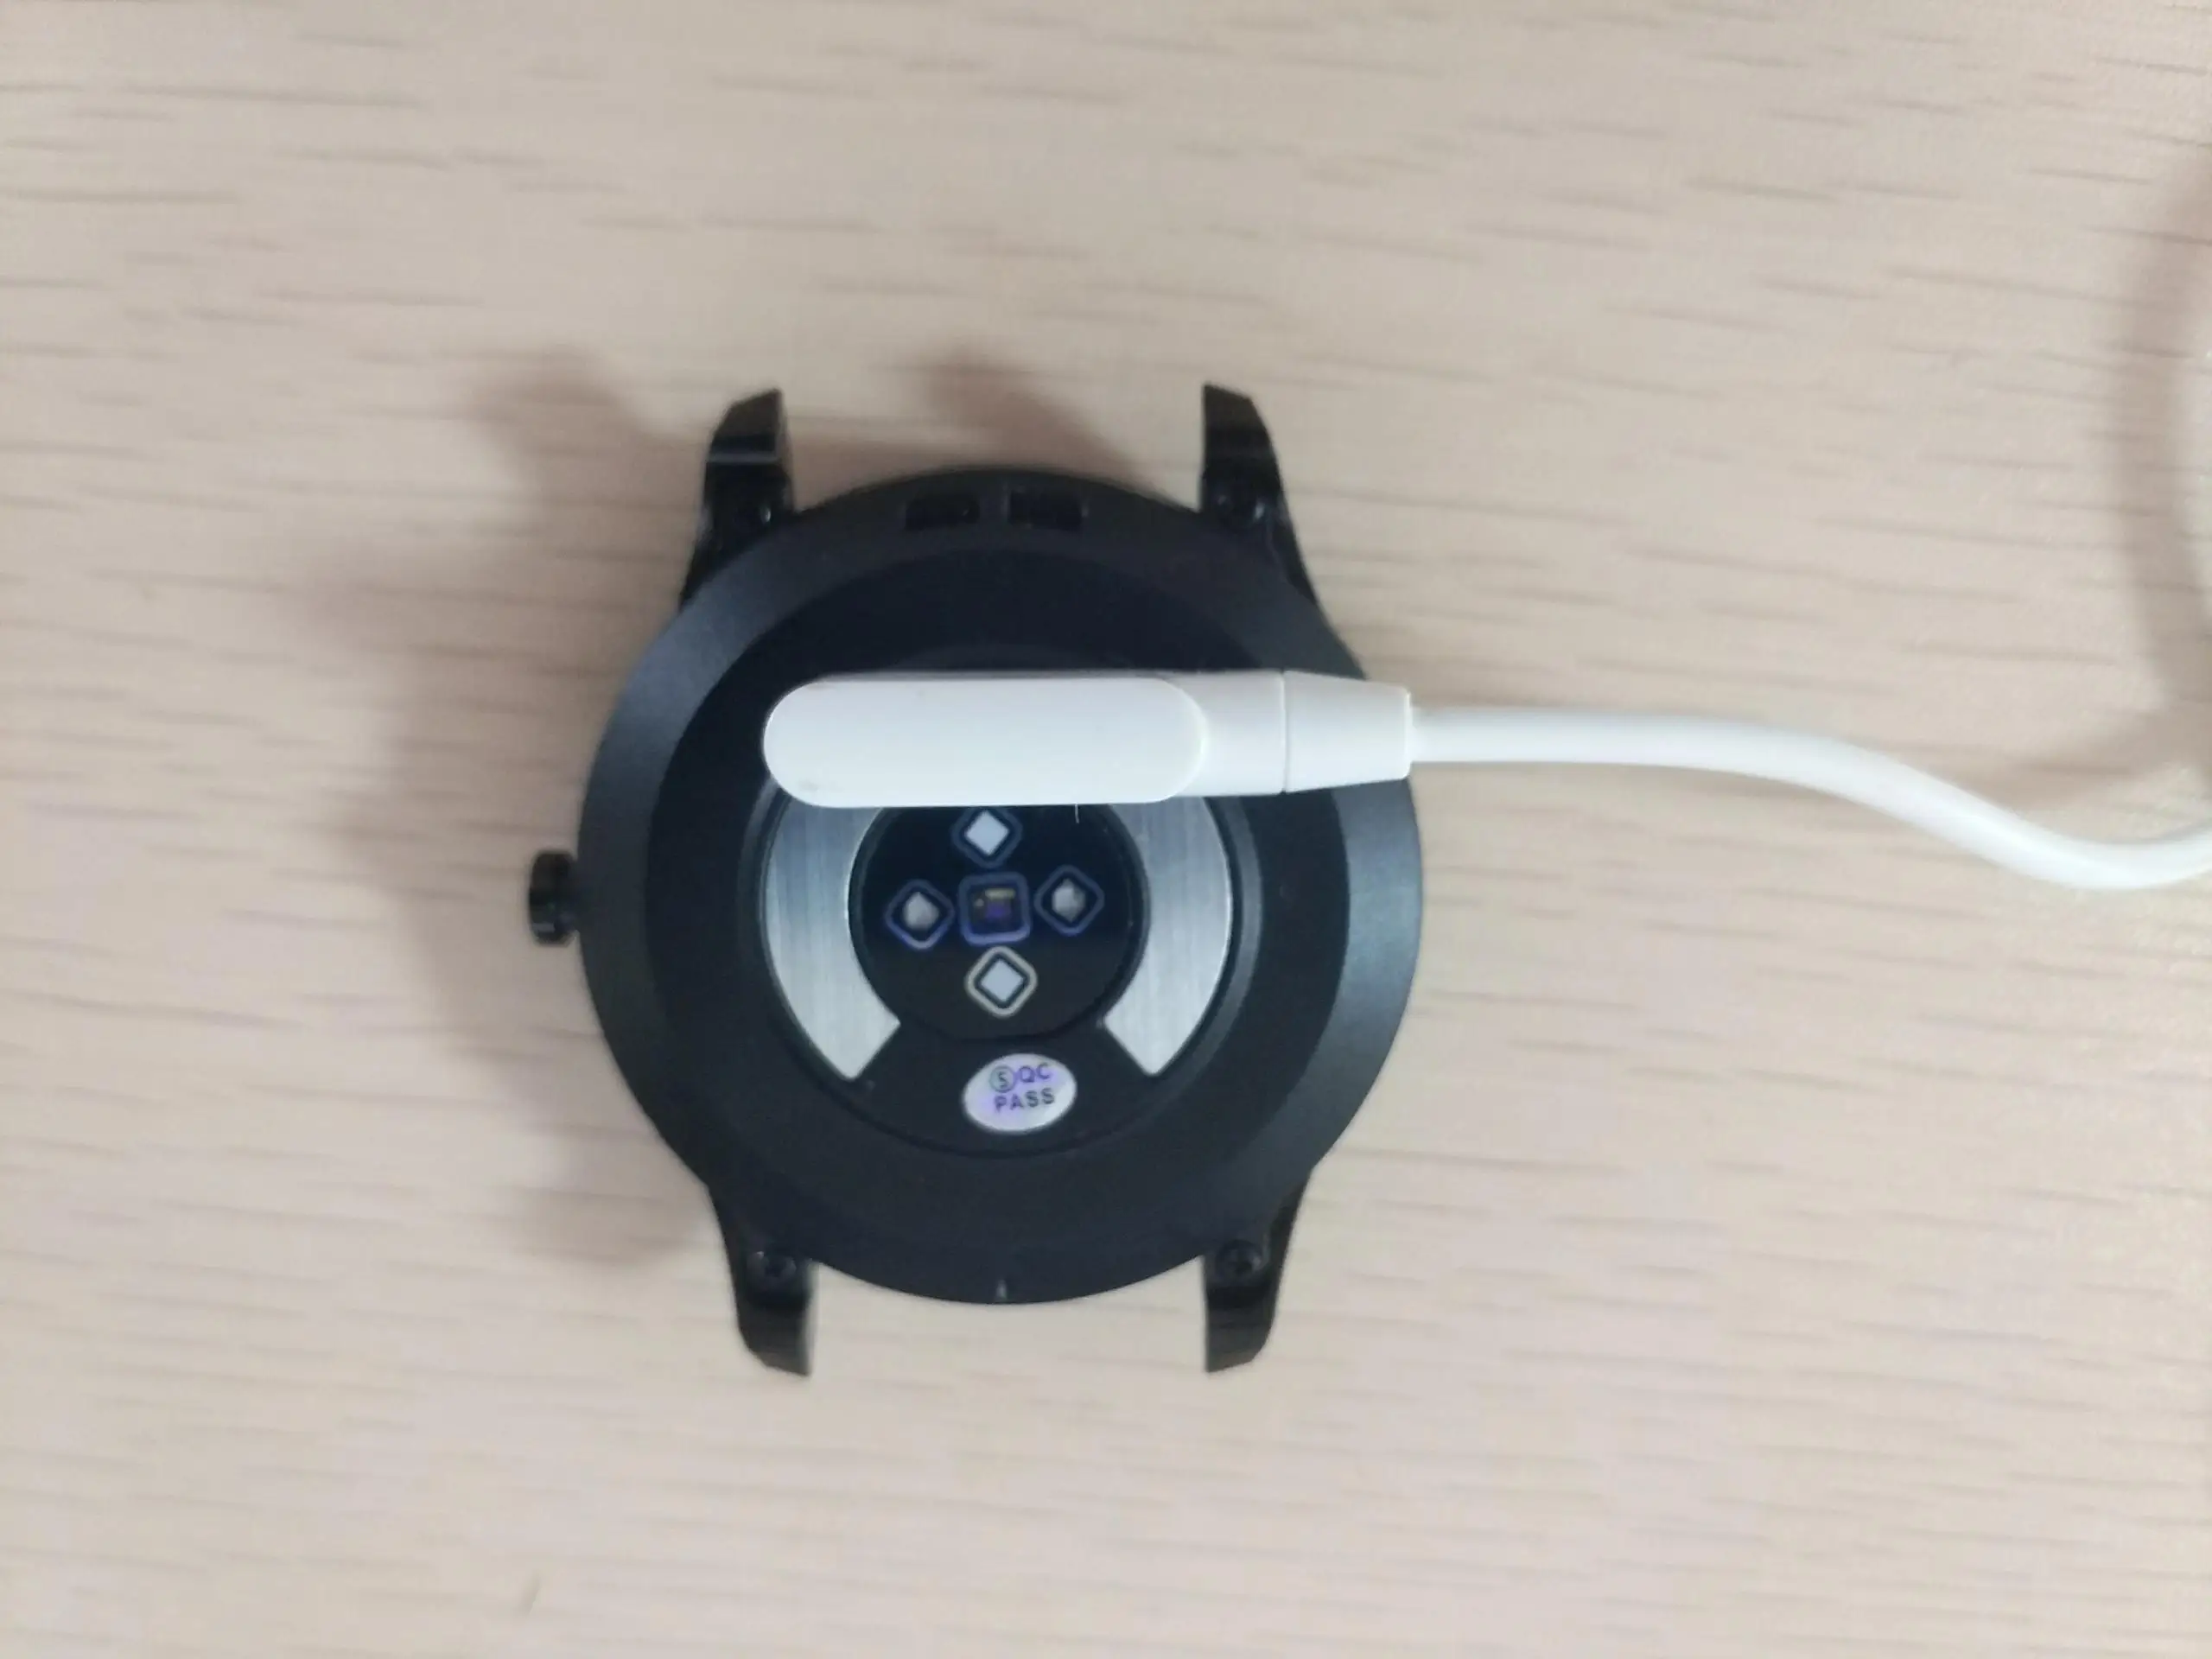 LYKRY оригинальные Смарт часы USB зарядное устройство кабель дата для DT98 L7 браслет ремешок Высокое качество зарядное устройство кабель